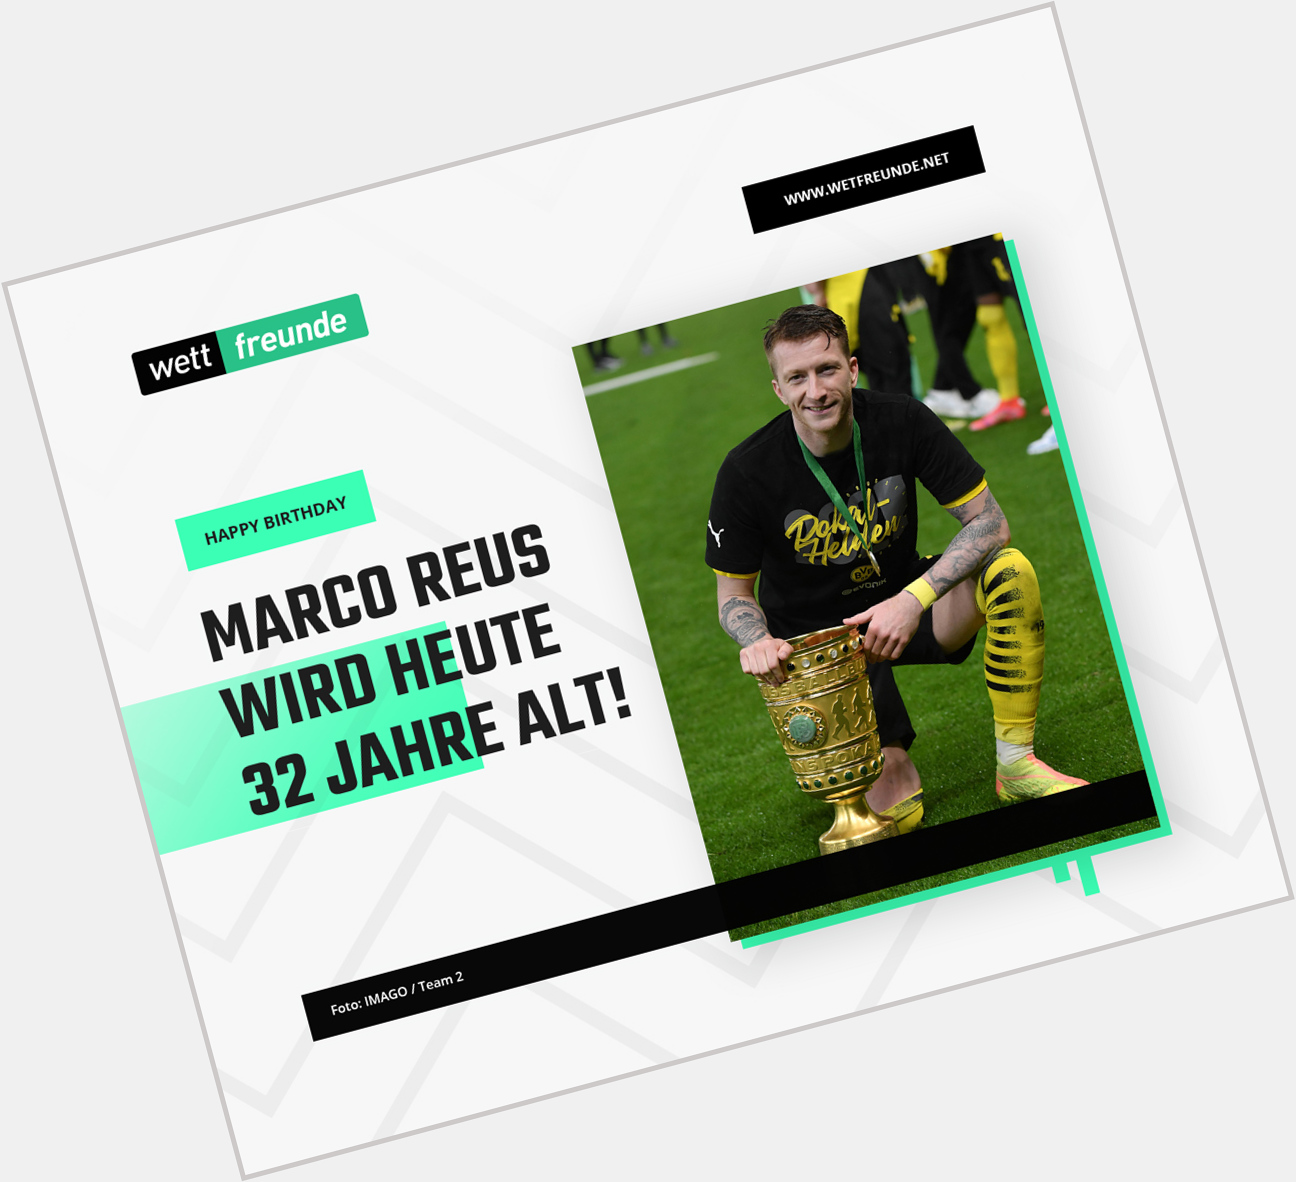 Marco Reus wird heute 32 Jahre alt   Happy Birthday!  